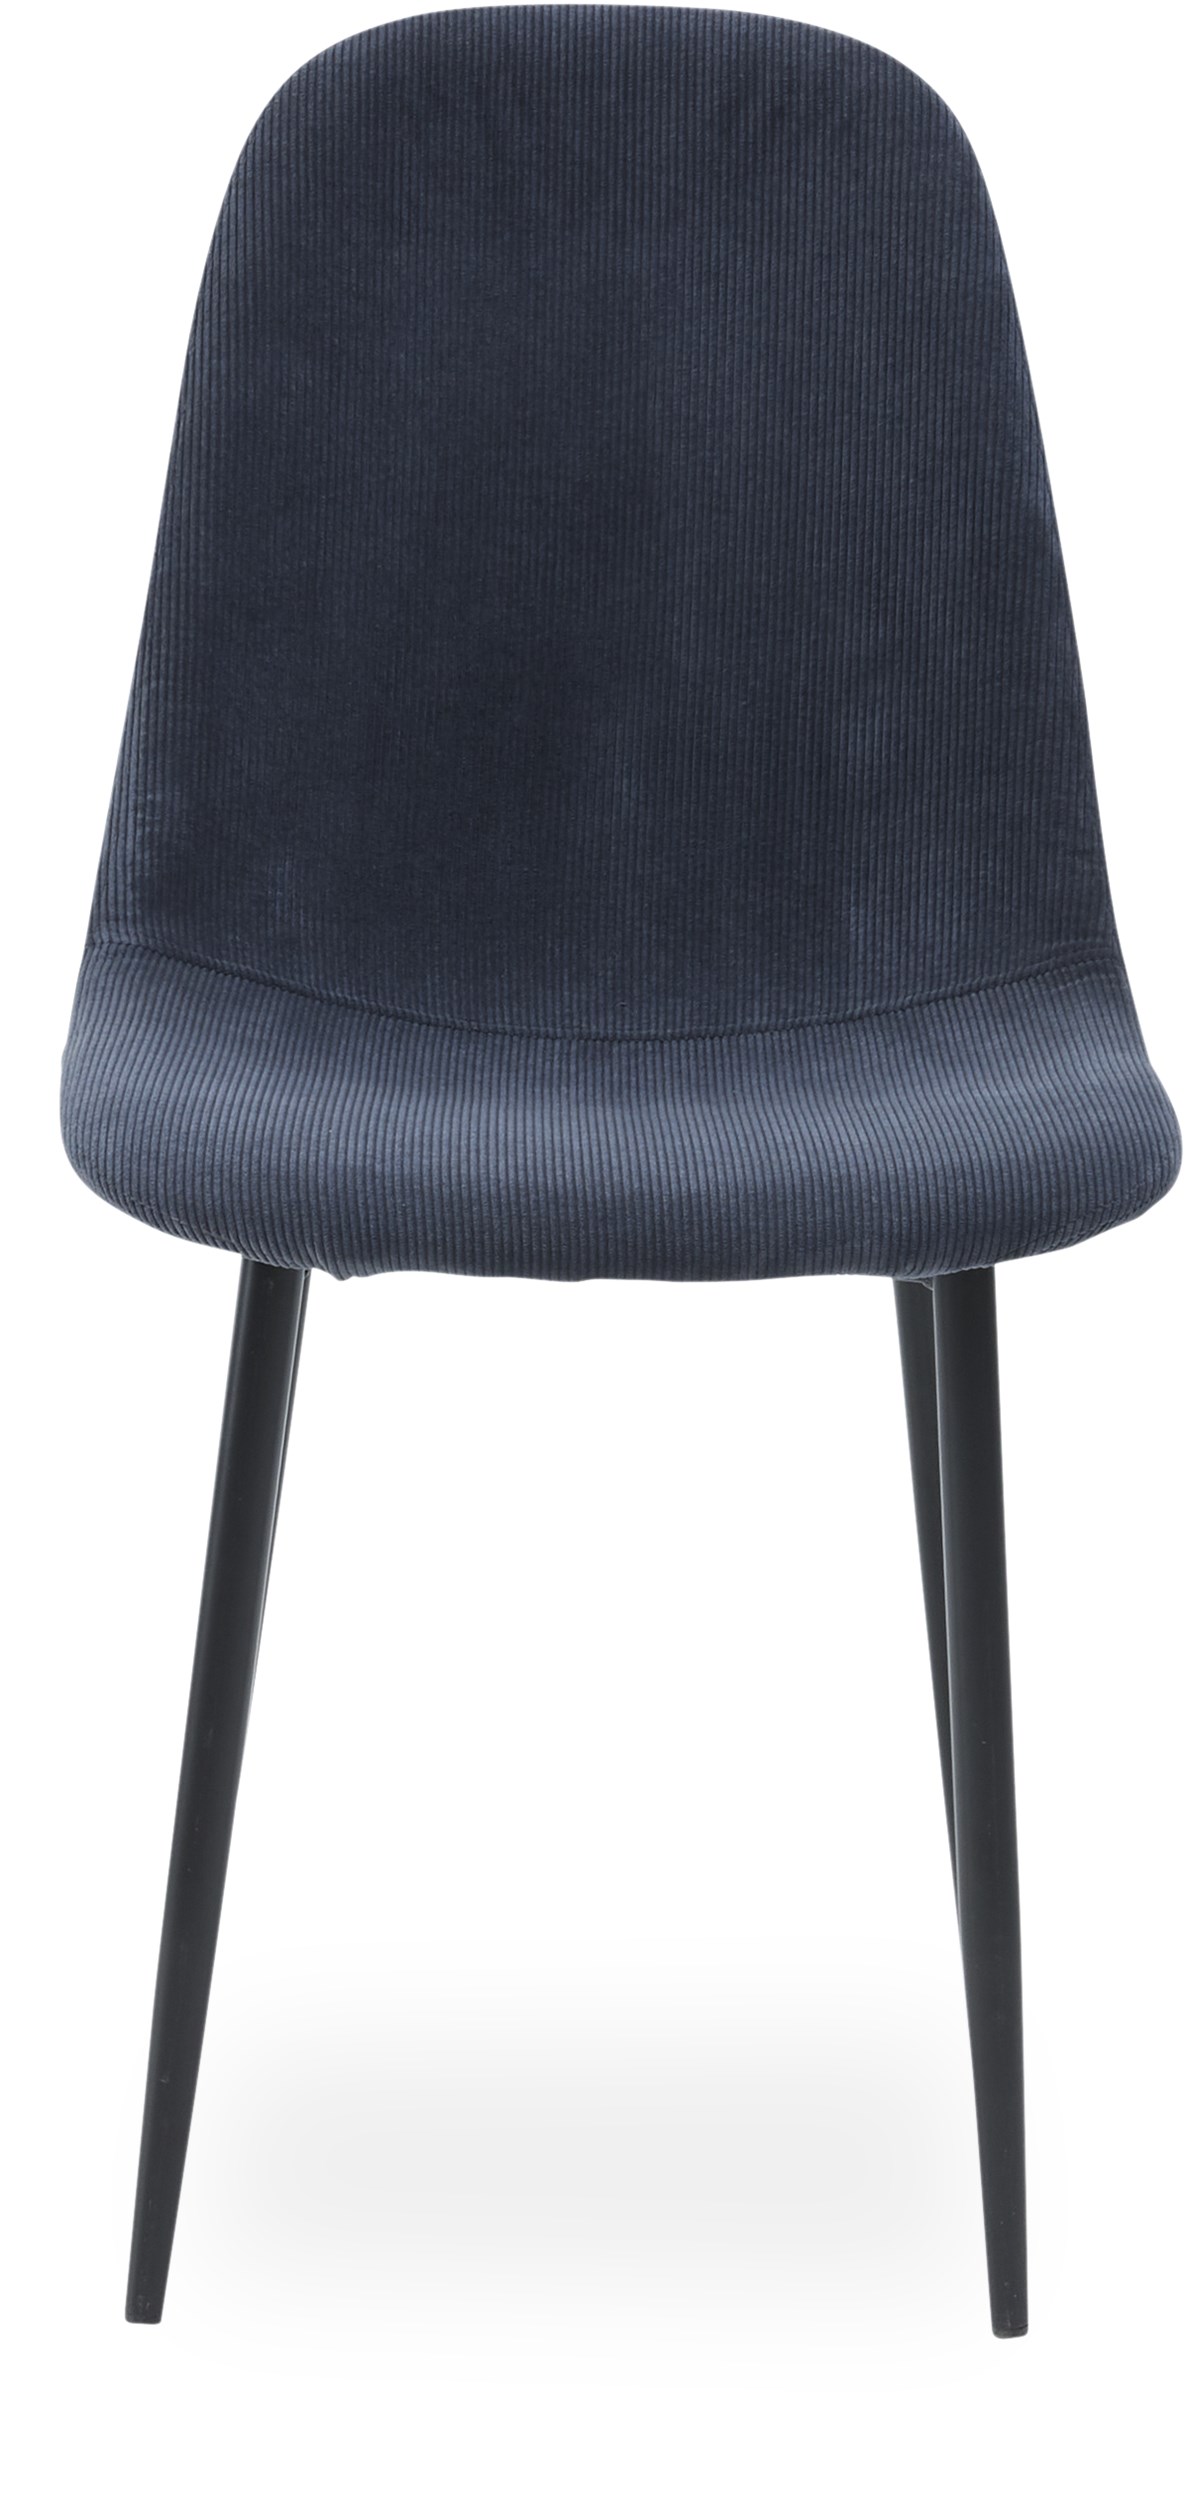 Timon matstol - Sits i Wave 040 Slate grey sammet och ben i svart pulverlackerad metall